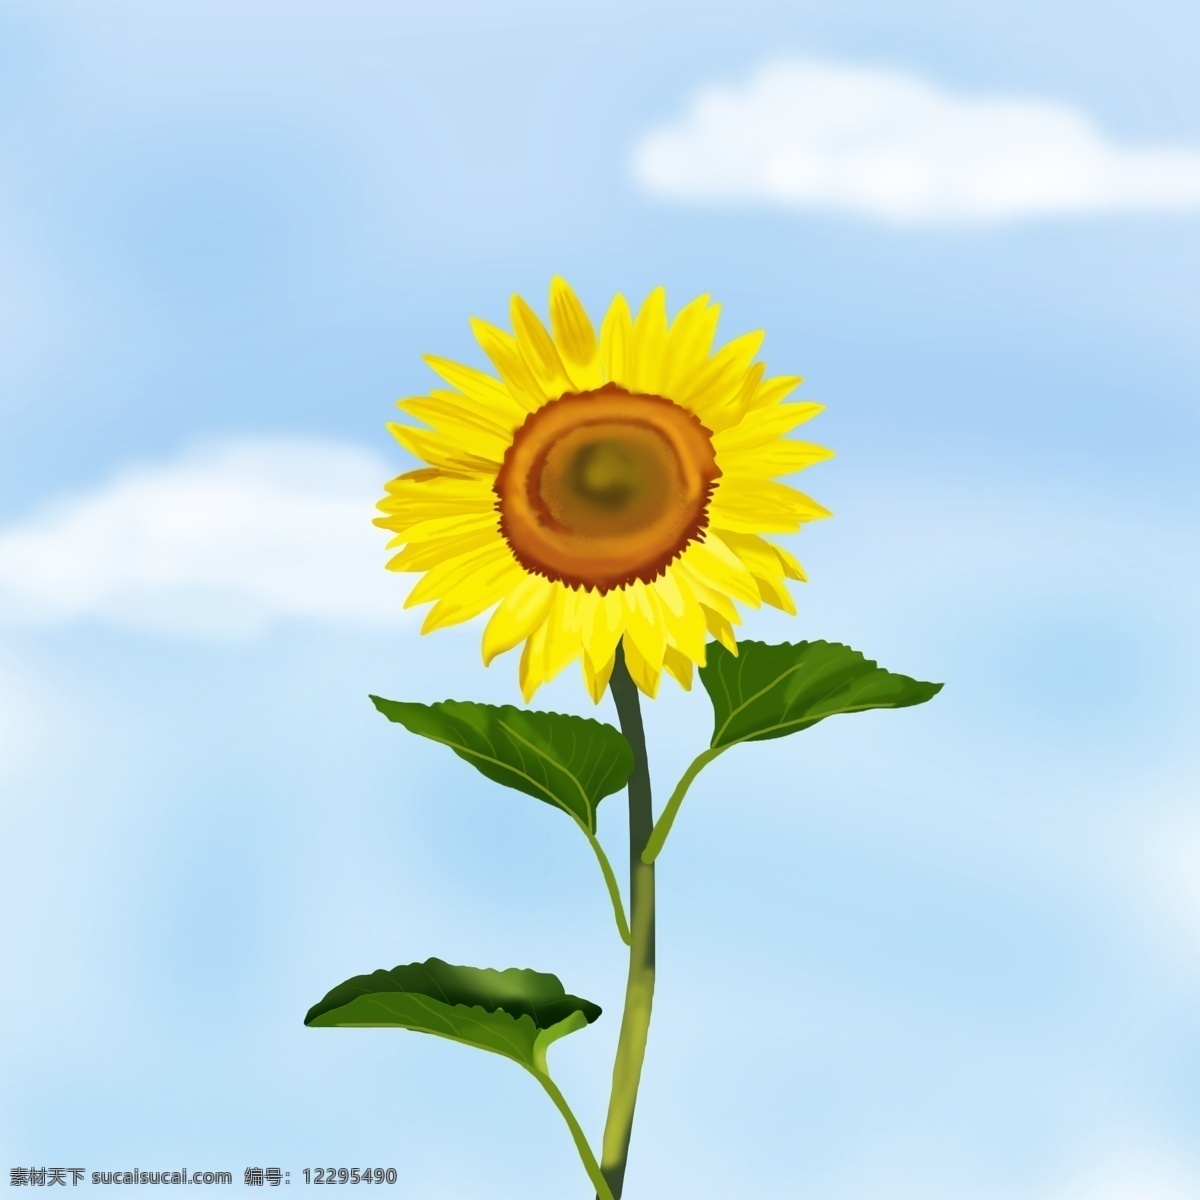 蓝天 下 向日葵 天空 白云 向阳插画 手绘 花瓣 叶子 绿色 黄色花瓣 花蕊 希望 阳光